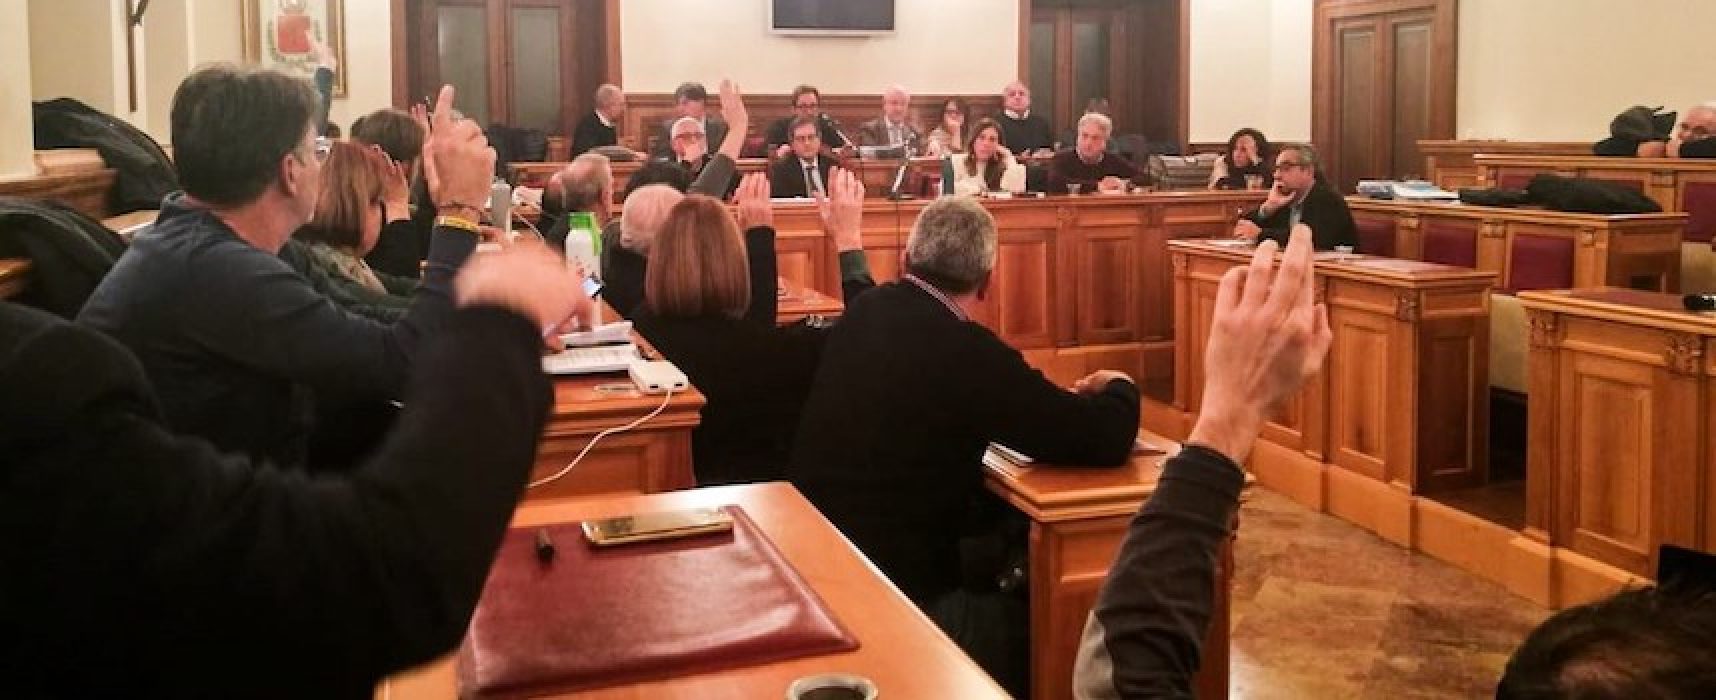 Sindaco e Assessori replicano a Spina su Consiglio comunale: “Distorce realtà per fini elettorali”